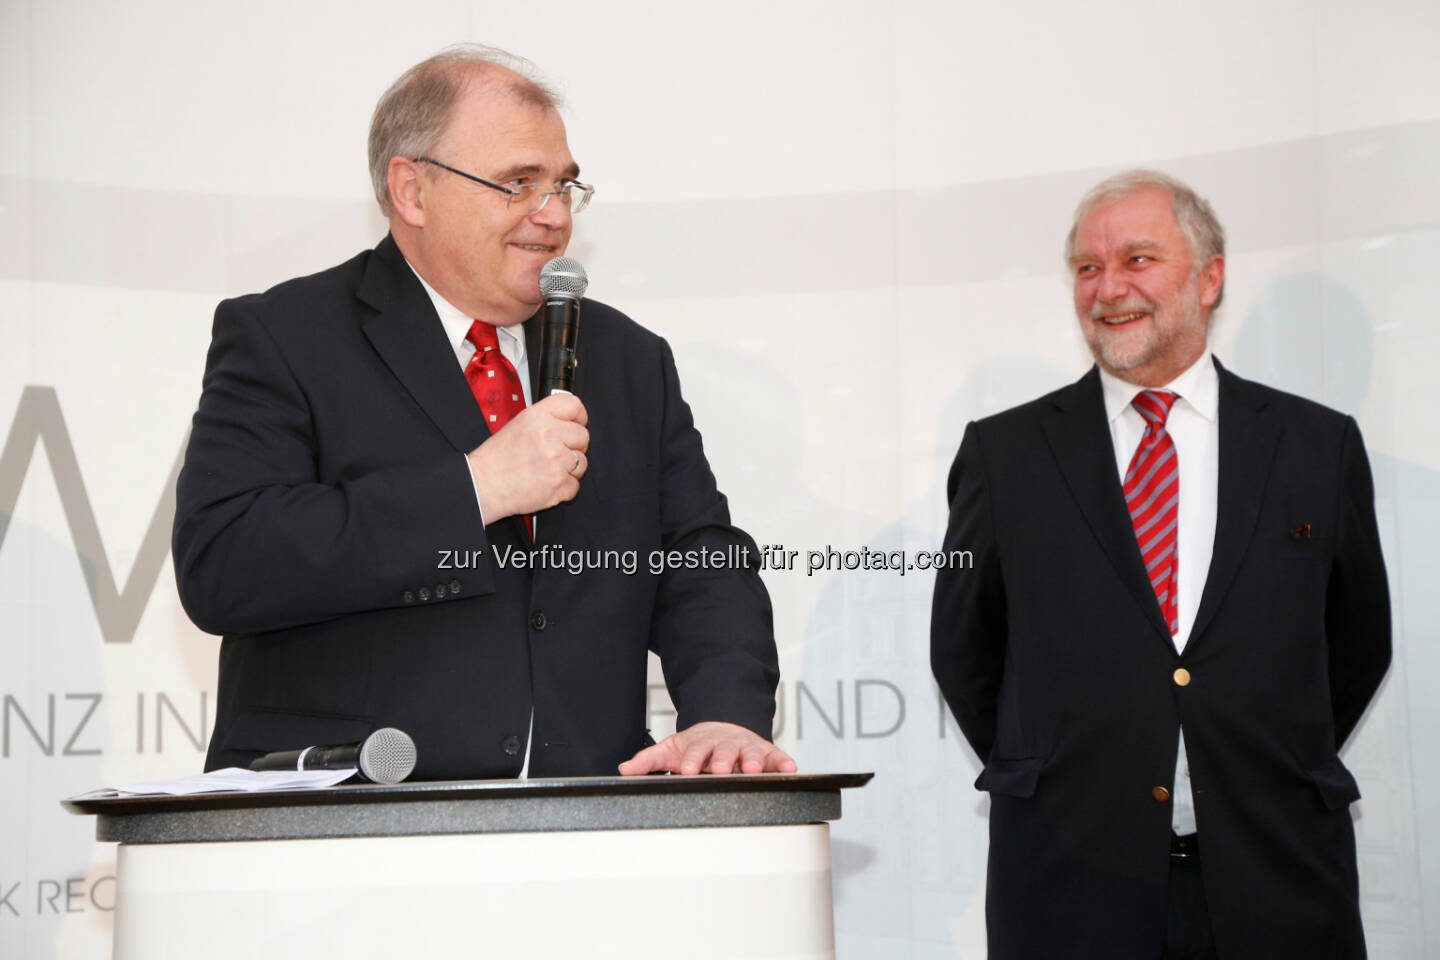 KWR Karasek Wietrzyk Rechtsanwälte GmbH: 10 Jahre KWR mit Wolfgang Brandstetter (Justizminister) und Georg Karasek (Partner, KWR) (c) Ludwig Schedl